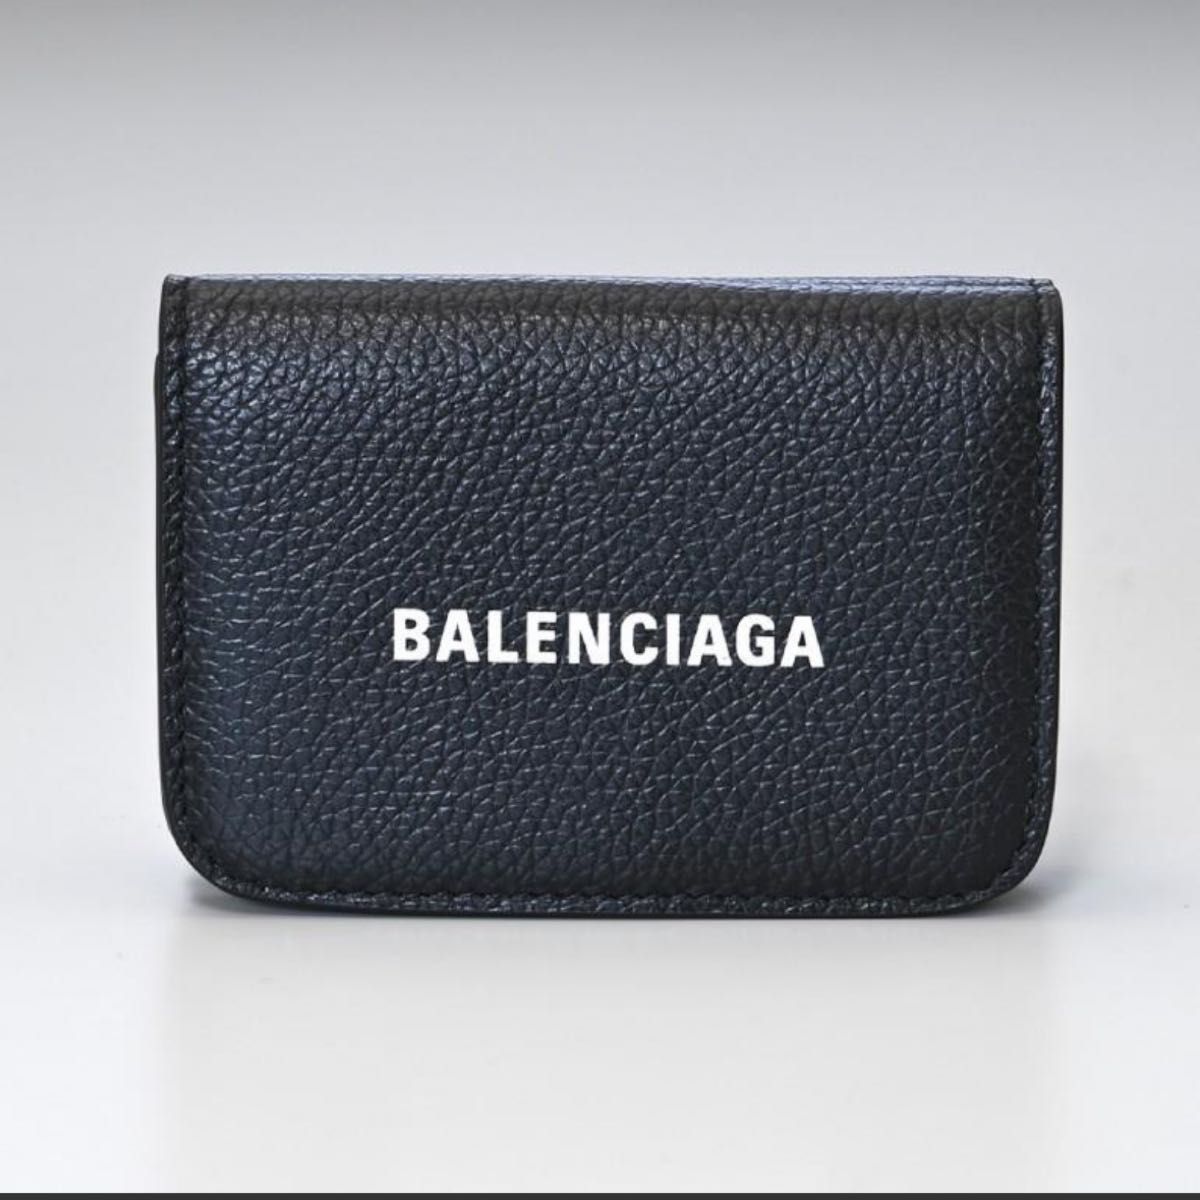 極美品 バレンシアガ 三つ折り財布 コンパクト エブリデイ ブラック 黒